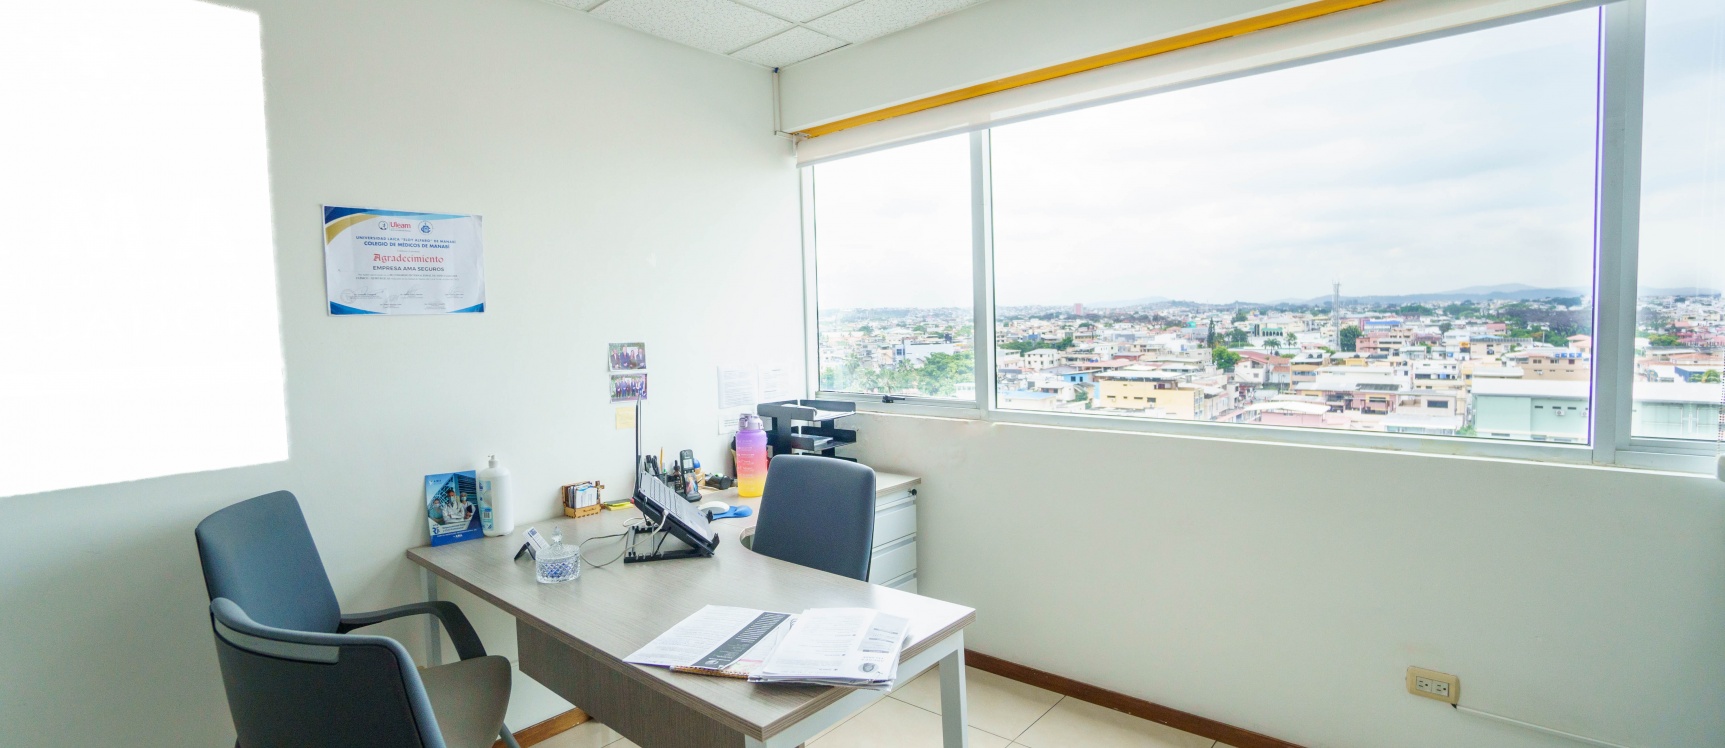 GeoBienes - Oficina en venta ubicada en el Edificio Trade Building - Plusvalia Guayaquil Casas de venta y alquiler Inmobiliaria Ecuador